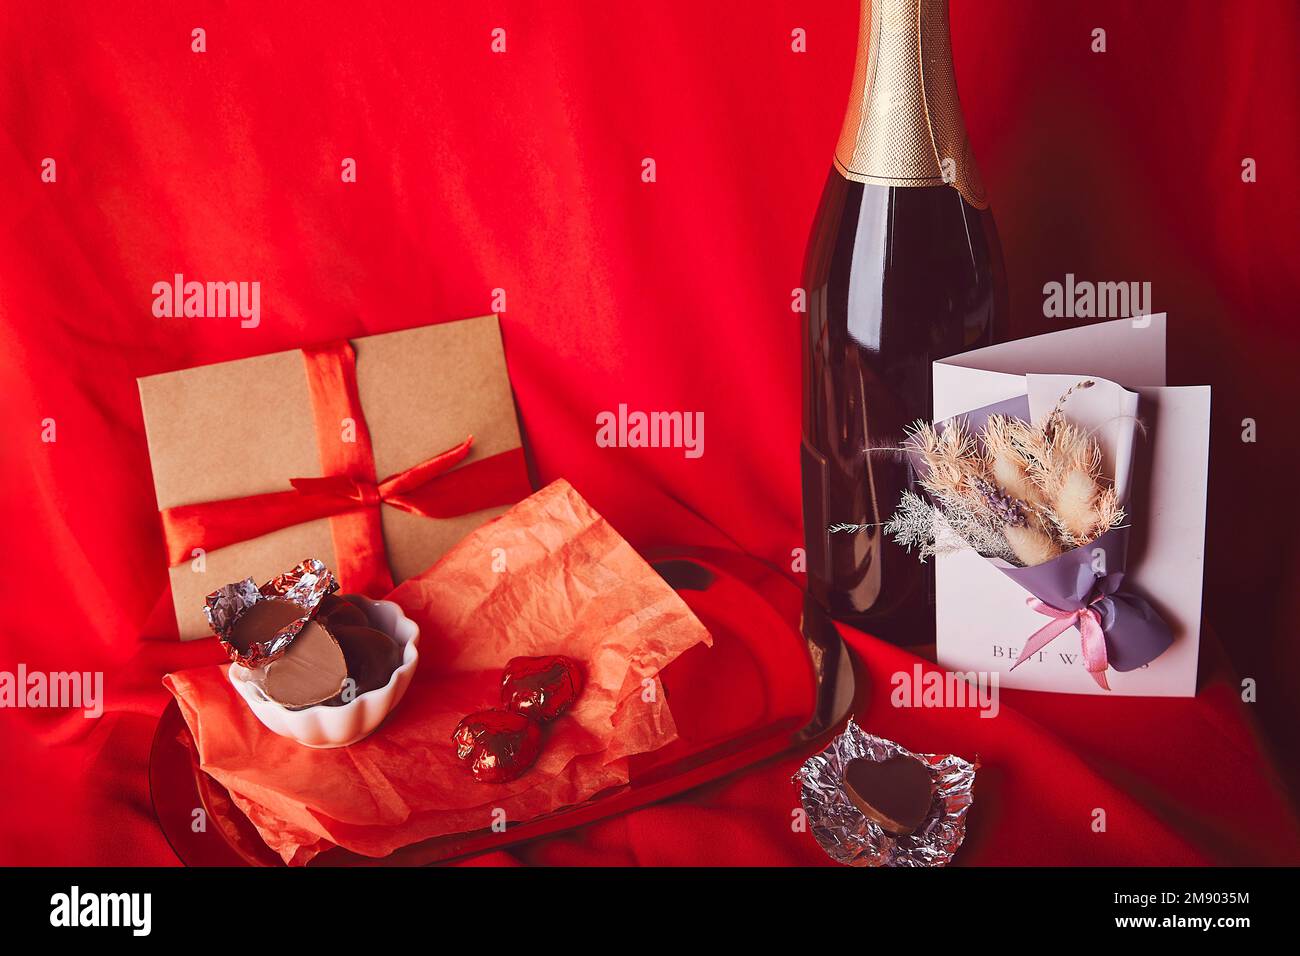 Cartolina giorno di San Valentino estetica. Cena romantica di stagione rossa con omaggio, cartolina, champagne e caramelle al cioccolato. Foto Stock